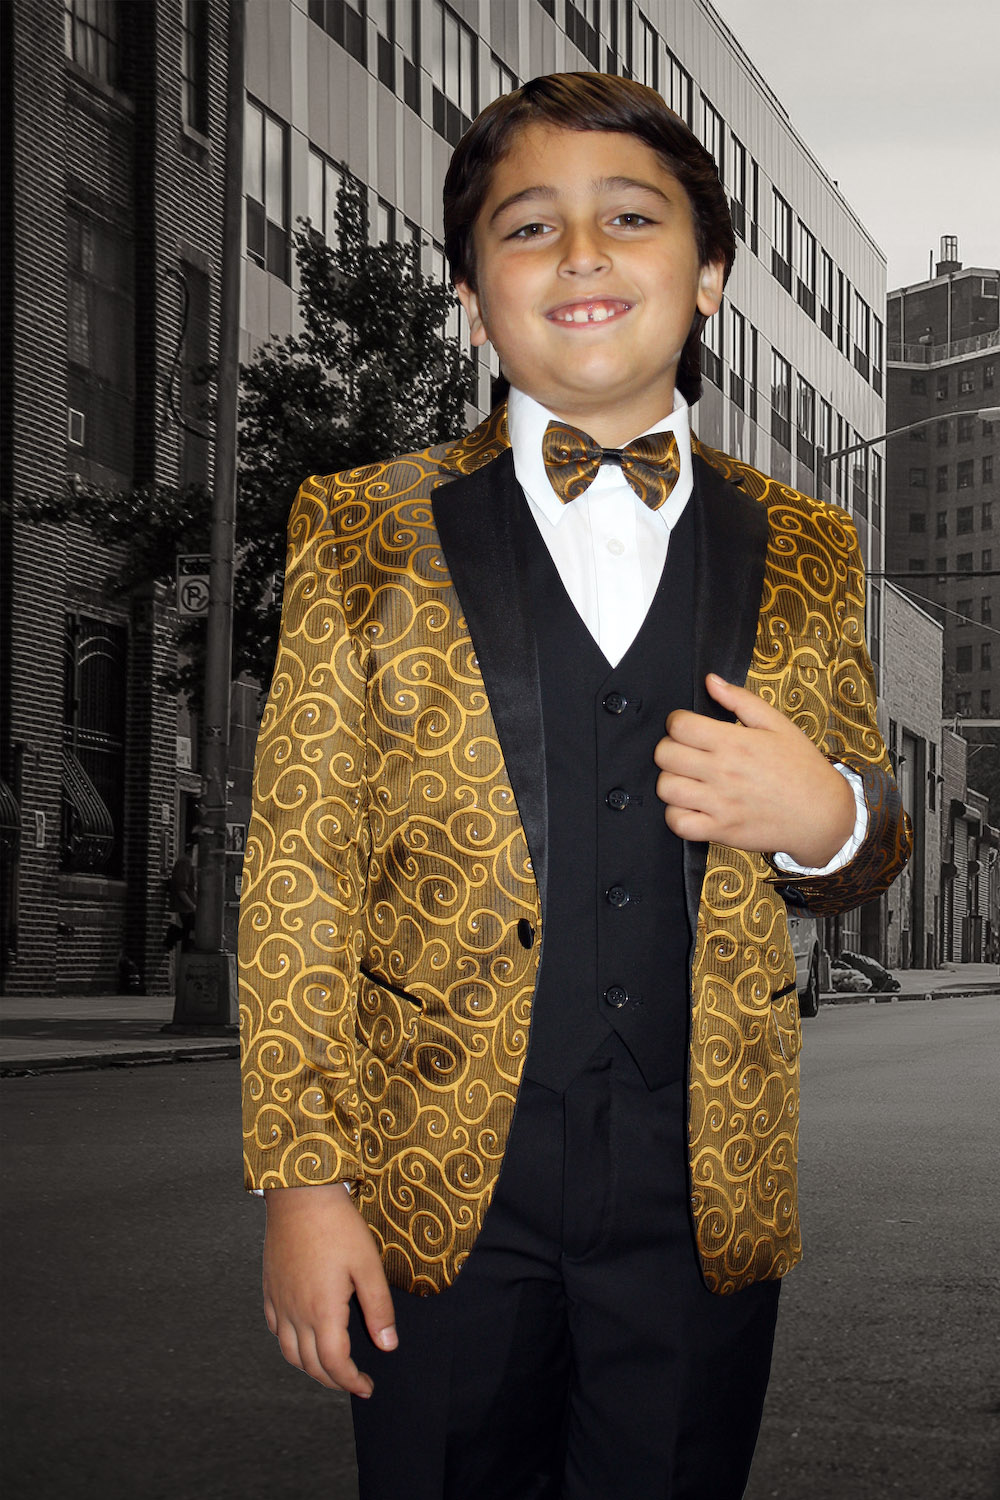 Gold Sequin BOW TIE Tuxedo Wedding Suit US SELLER Adult Children 6 